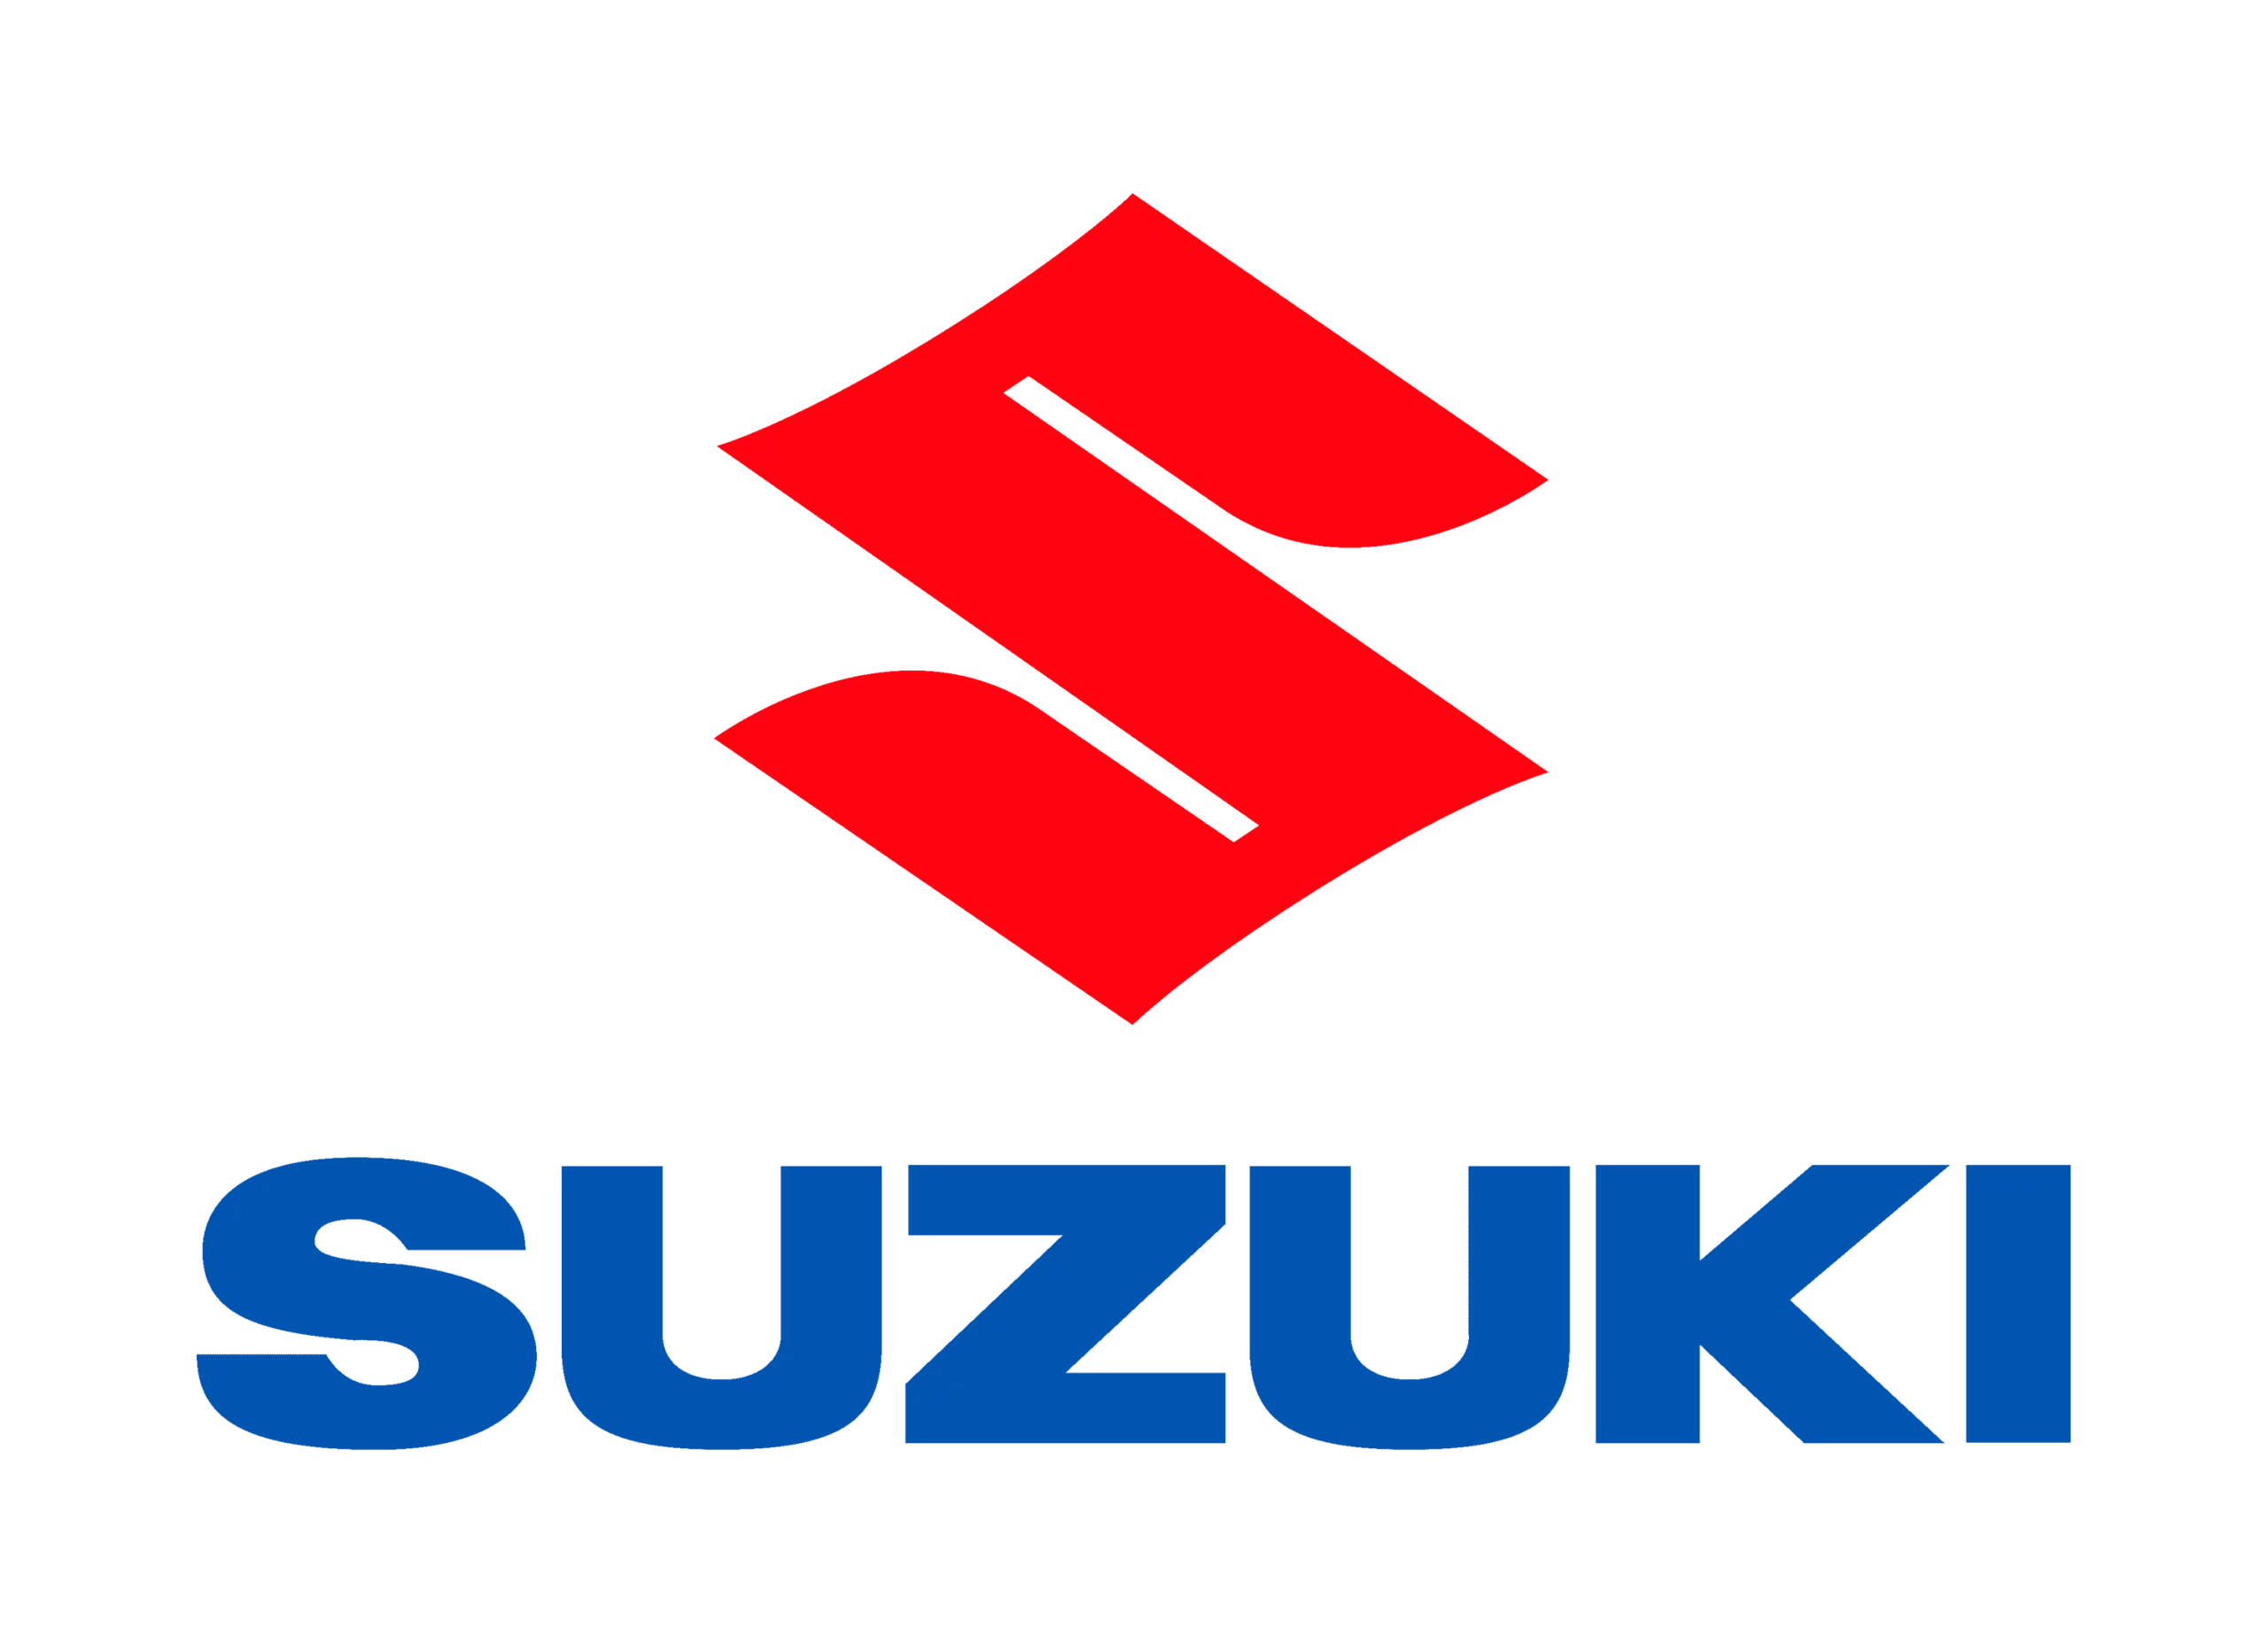 Suzuki logo 1958-present